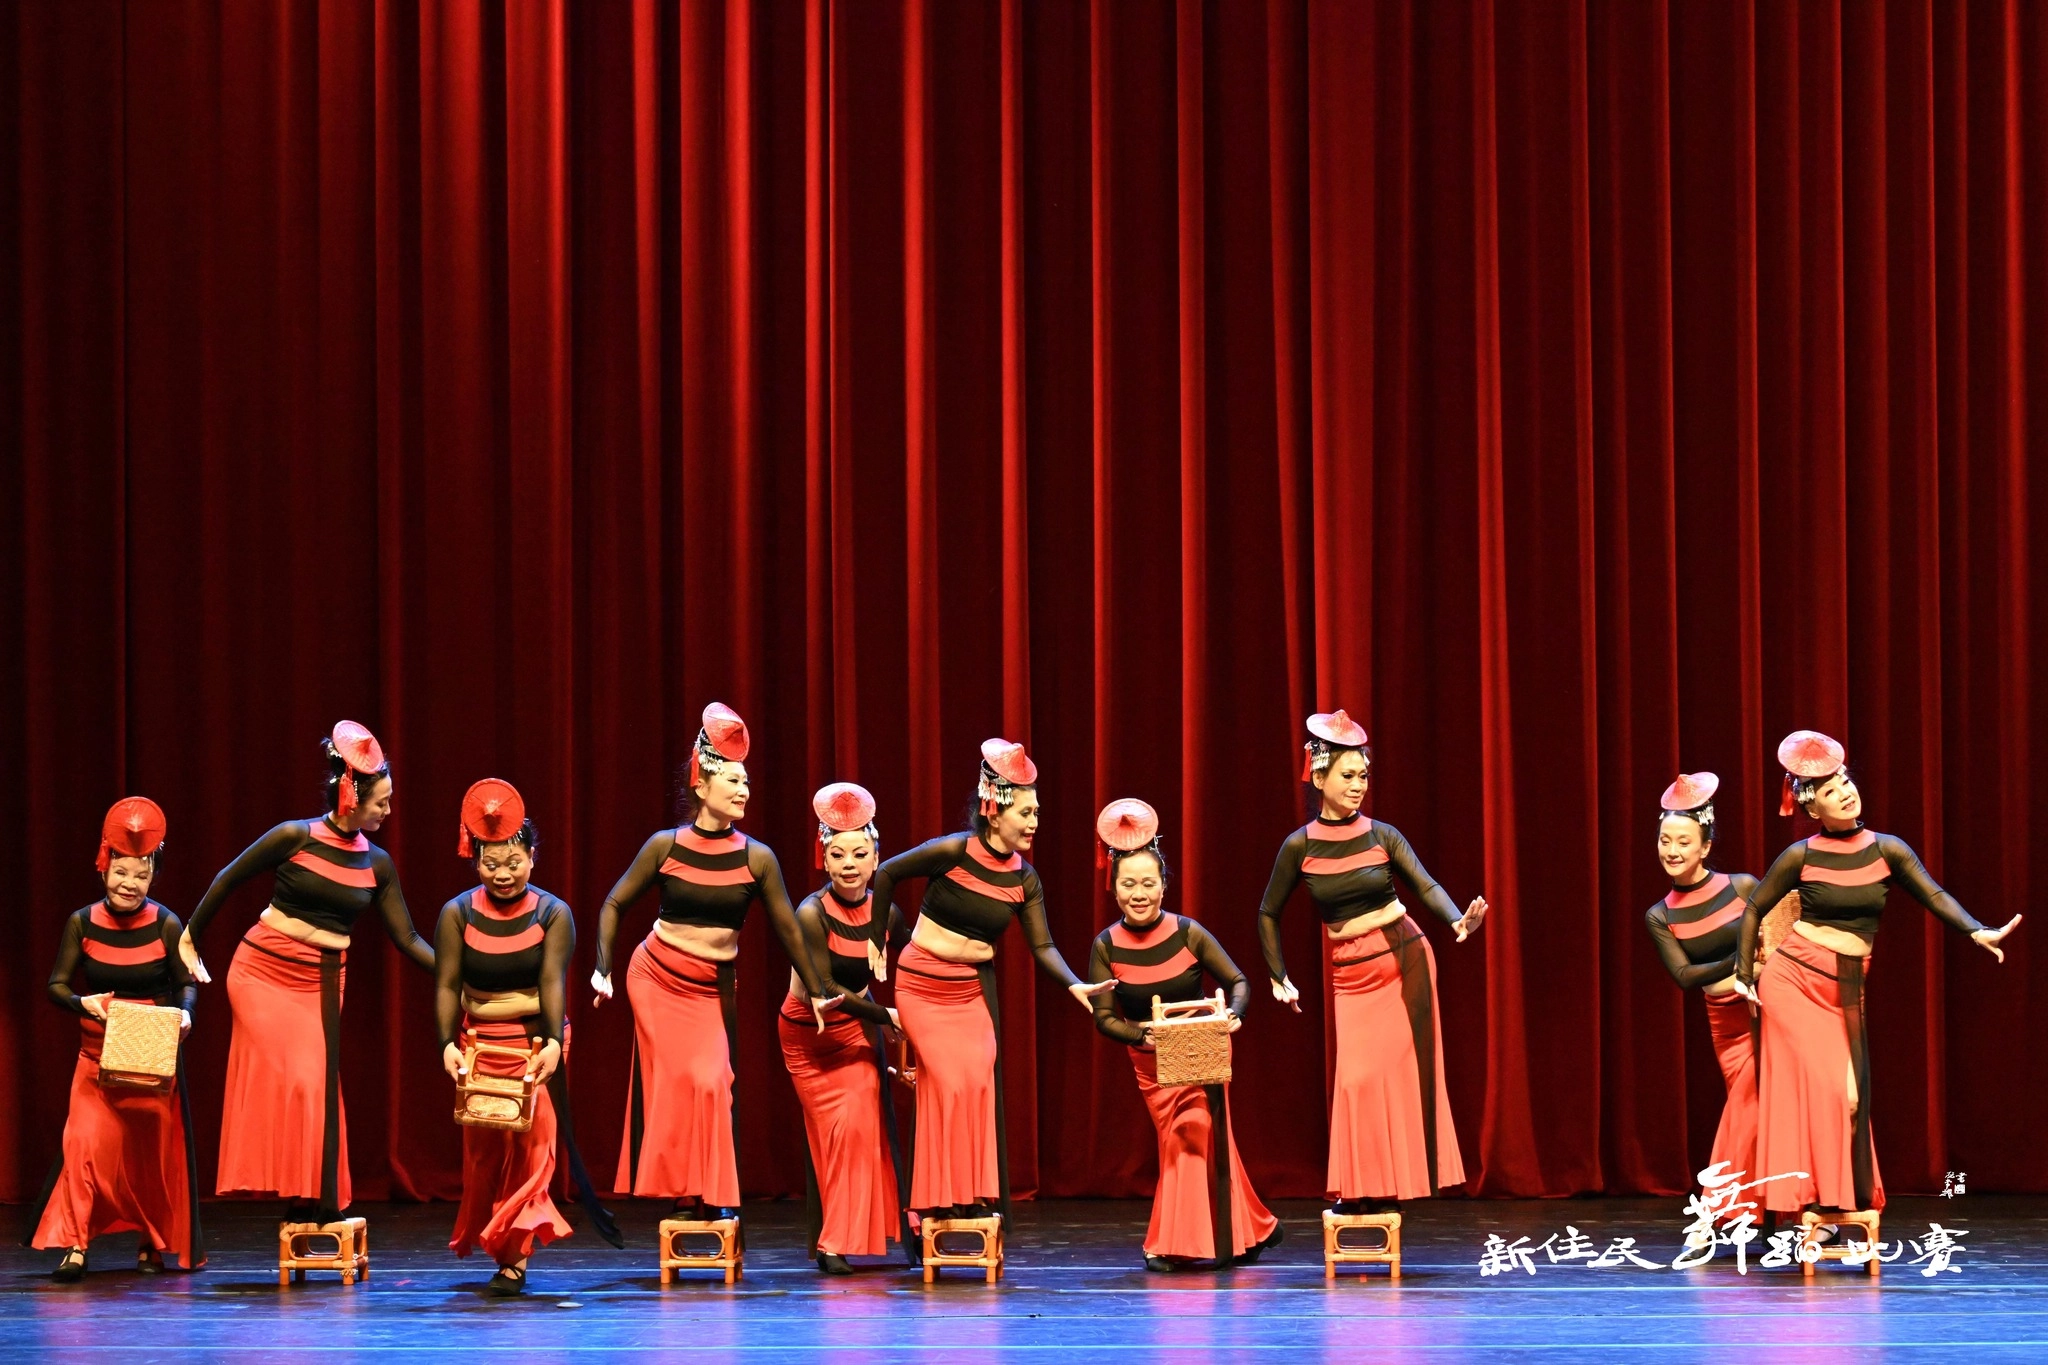 齊風藝術舞蹈團《緬甸花兒紅又紅》。